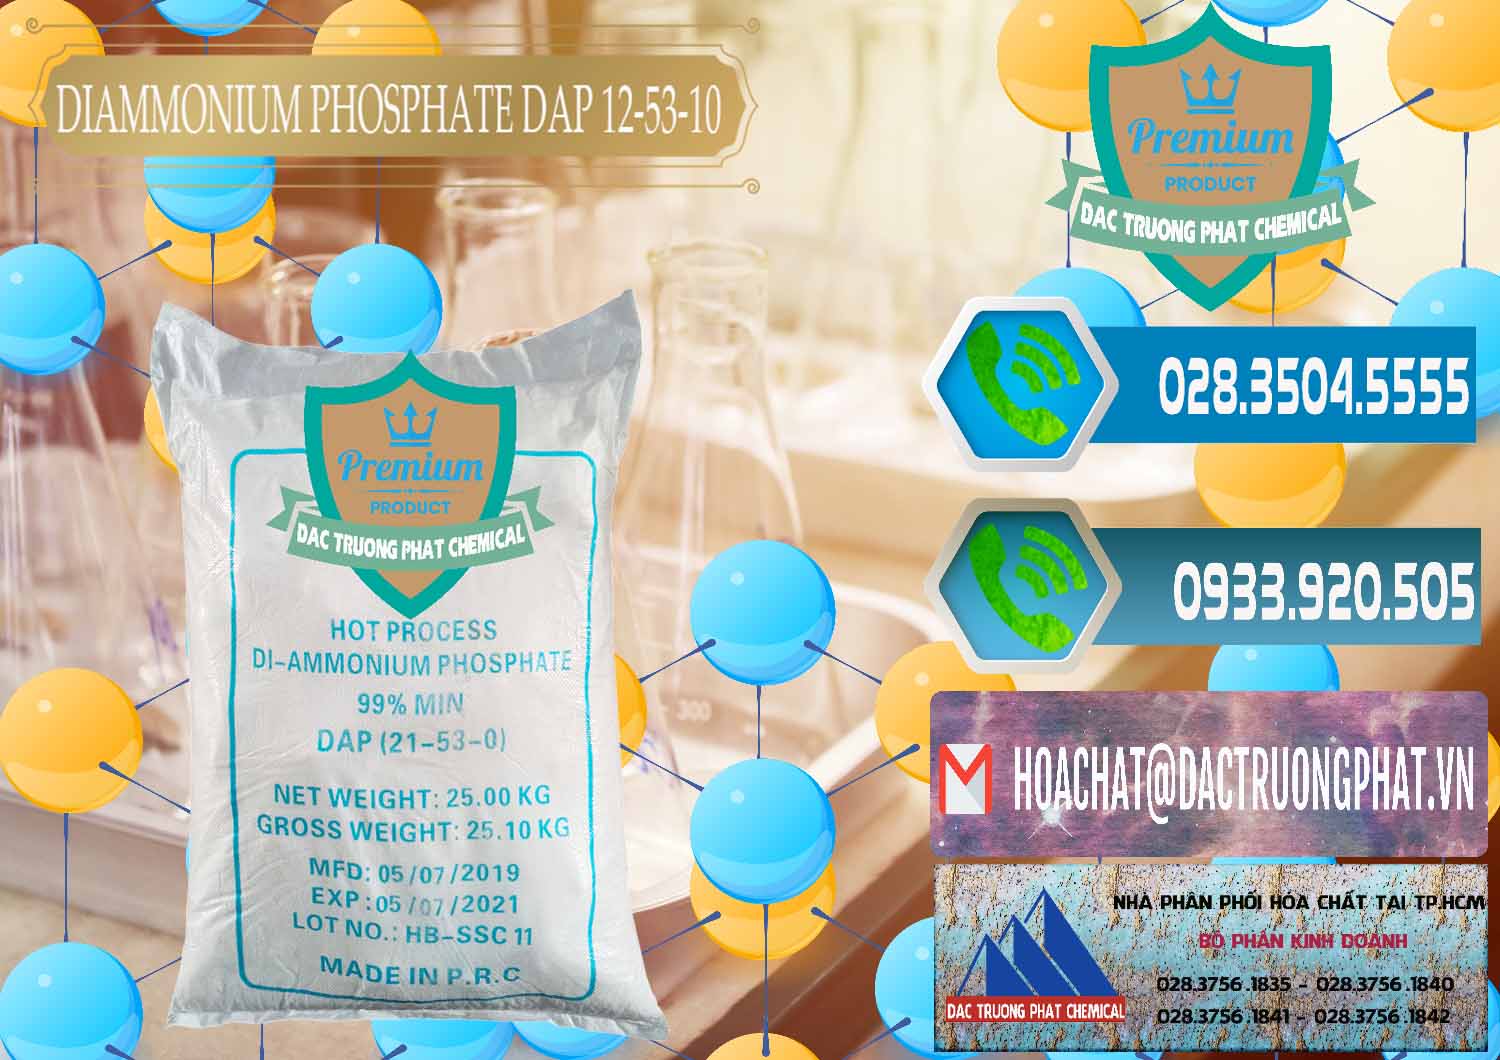 Cty chuyên bán - cung cấp DAP - Diammonium Phosphate Trung Quốc China - 0319 - Nhà phân phối ( cung ứng ) hóa chất tại TP.HCM - congtyhoachat.net